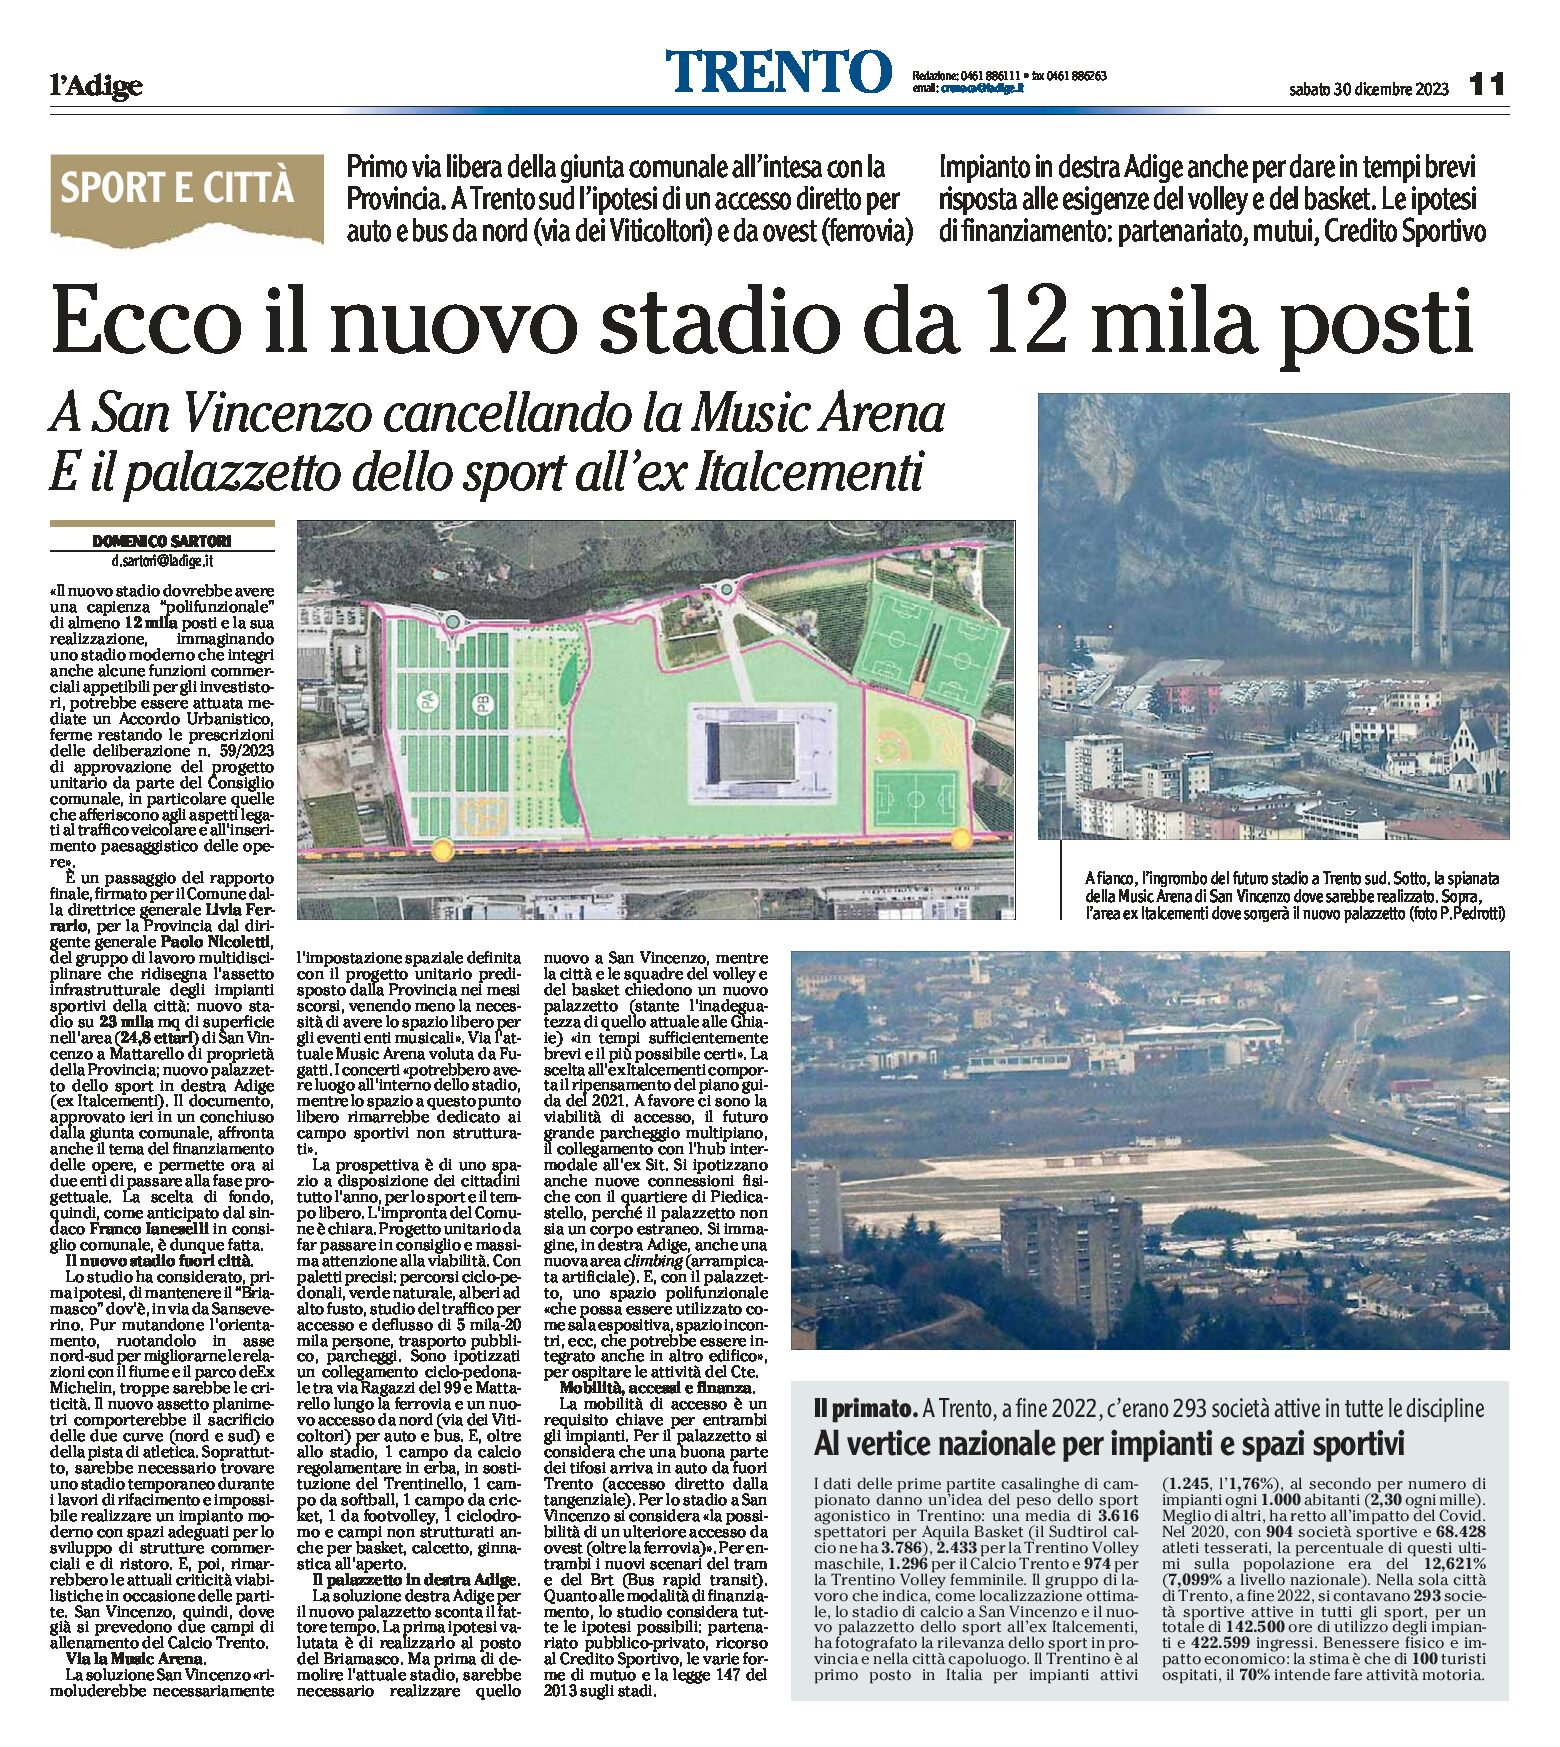 Trento: ecco il nuovo stadio da 12 mila posti. A San Vincenzo, via la Music Arena